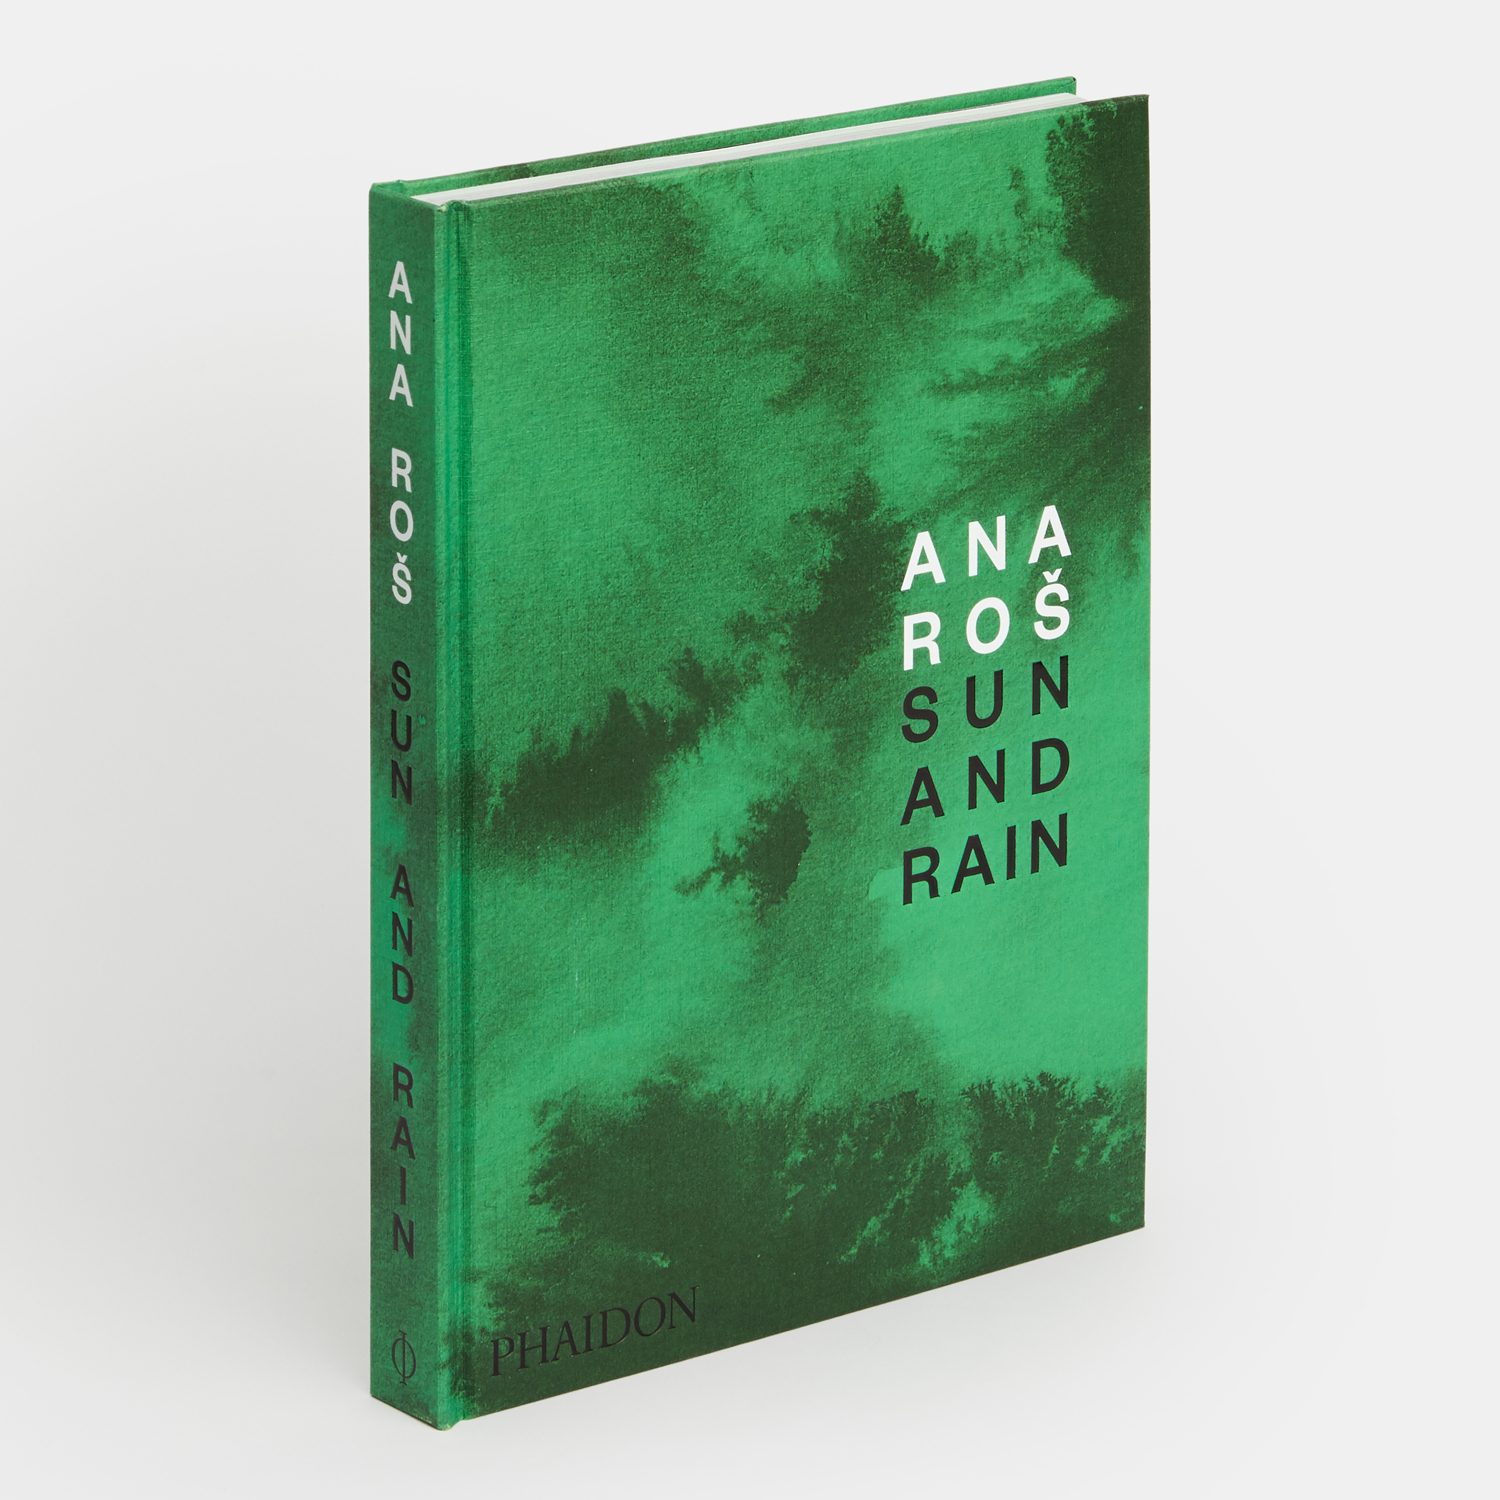 Ana Roš: Sun and Rain